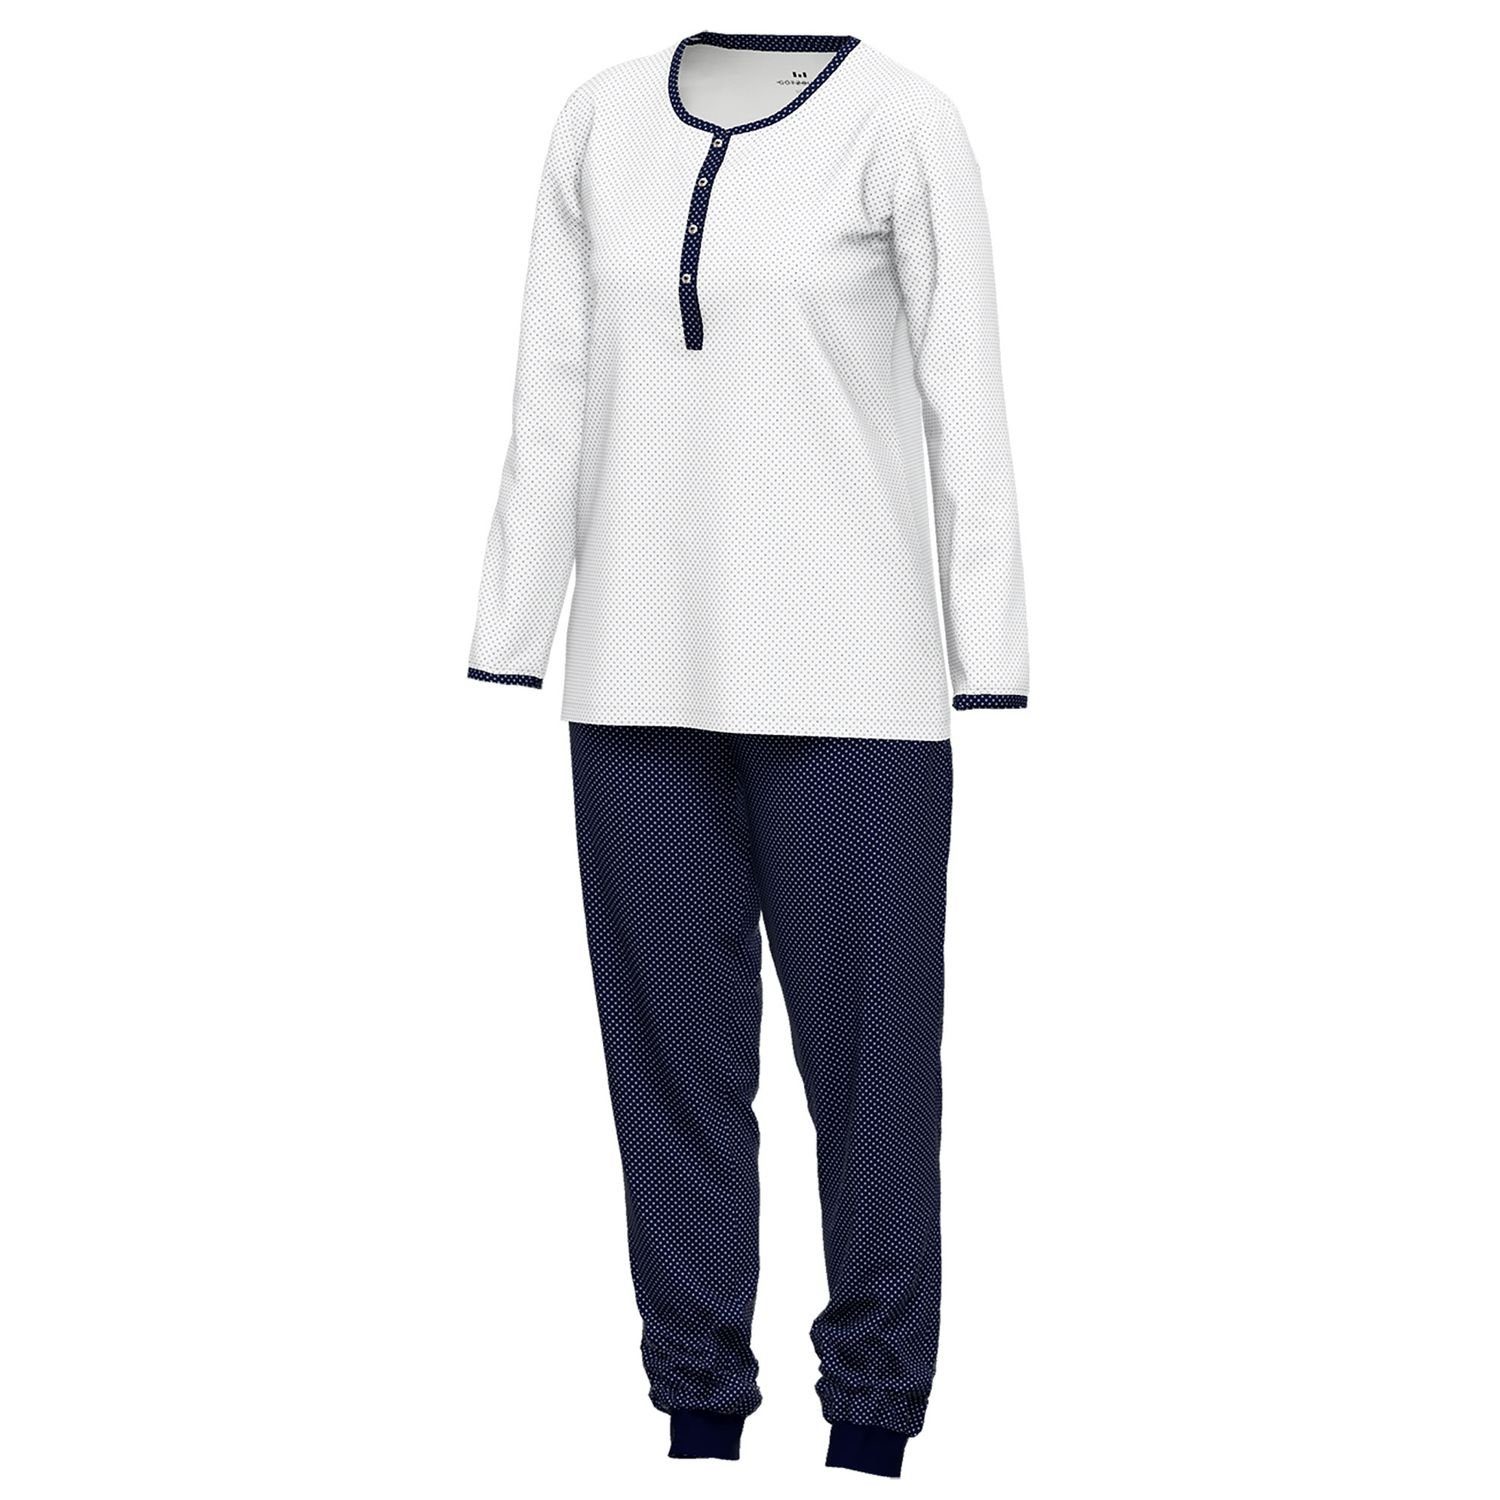 Schlafanzug mit gepunktet Knöpfe, weich, Baumolle GÖTZBURG Henley-Auschnitt, navy weiß / langarm, bequem, reine